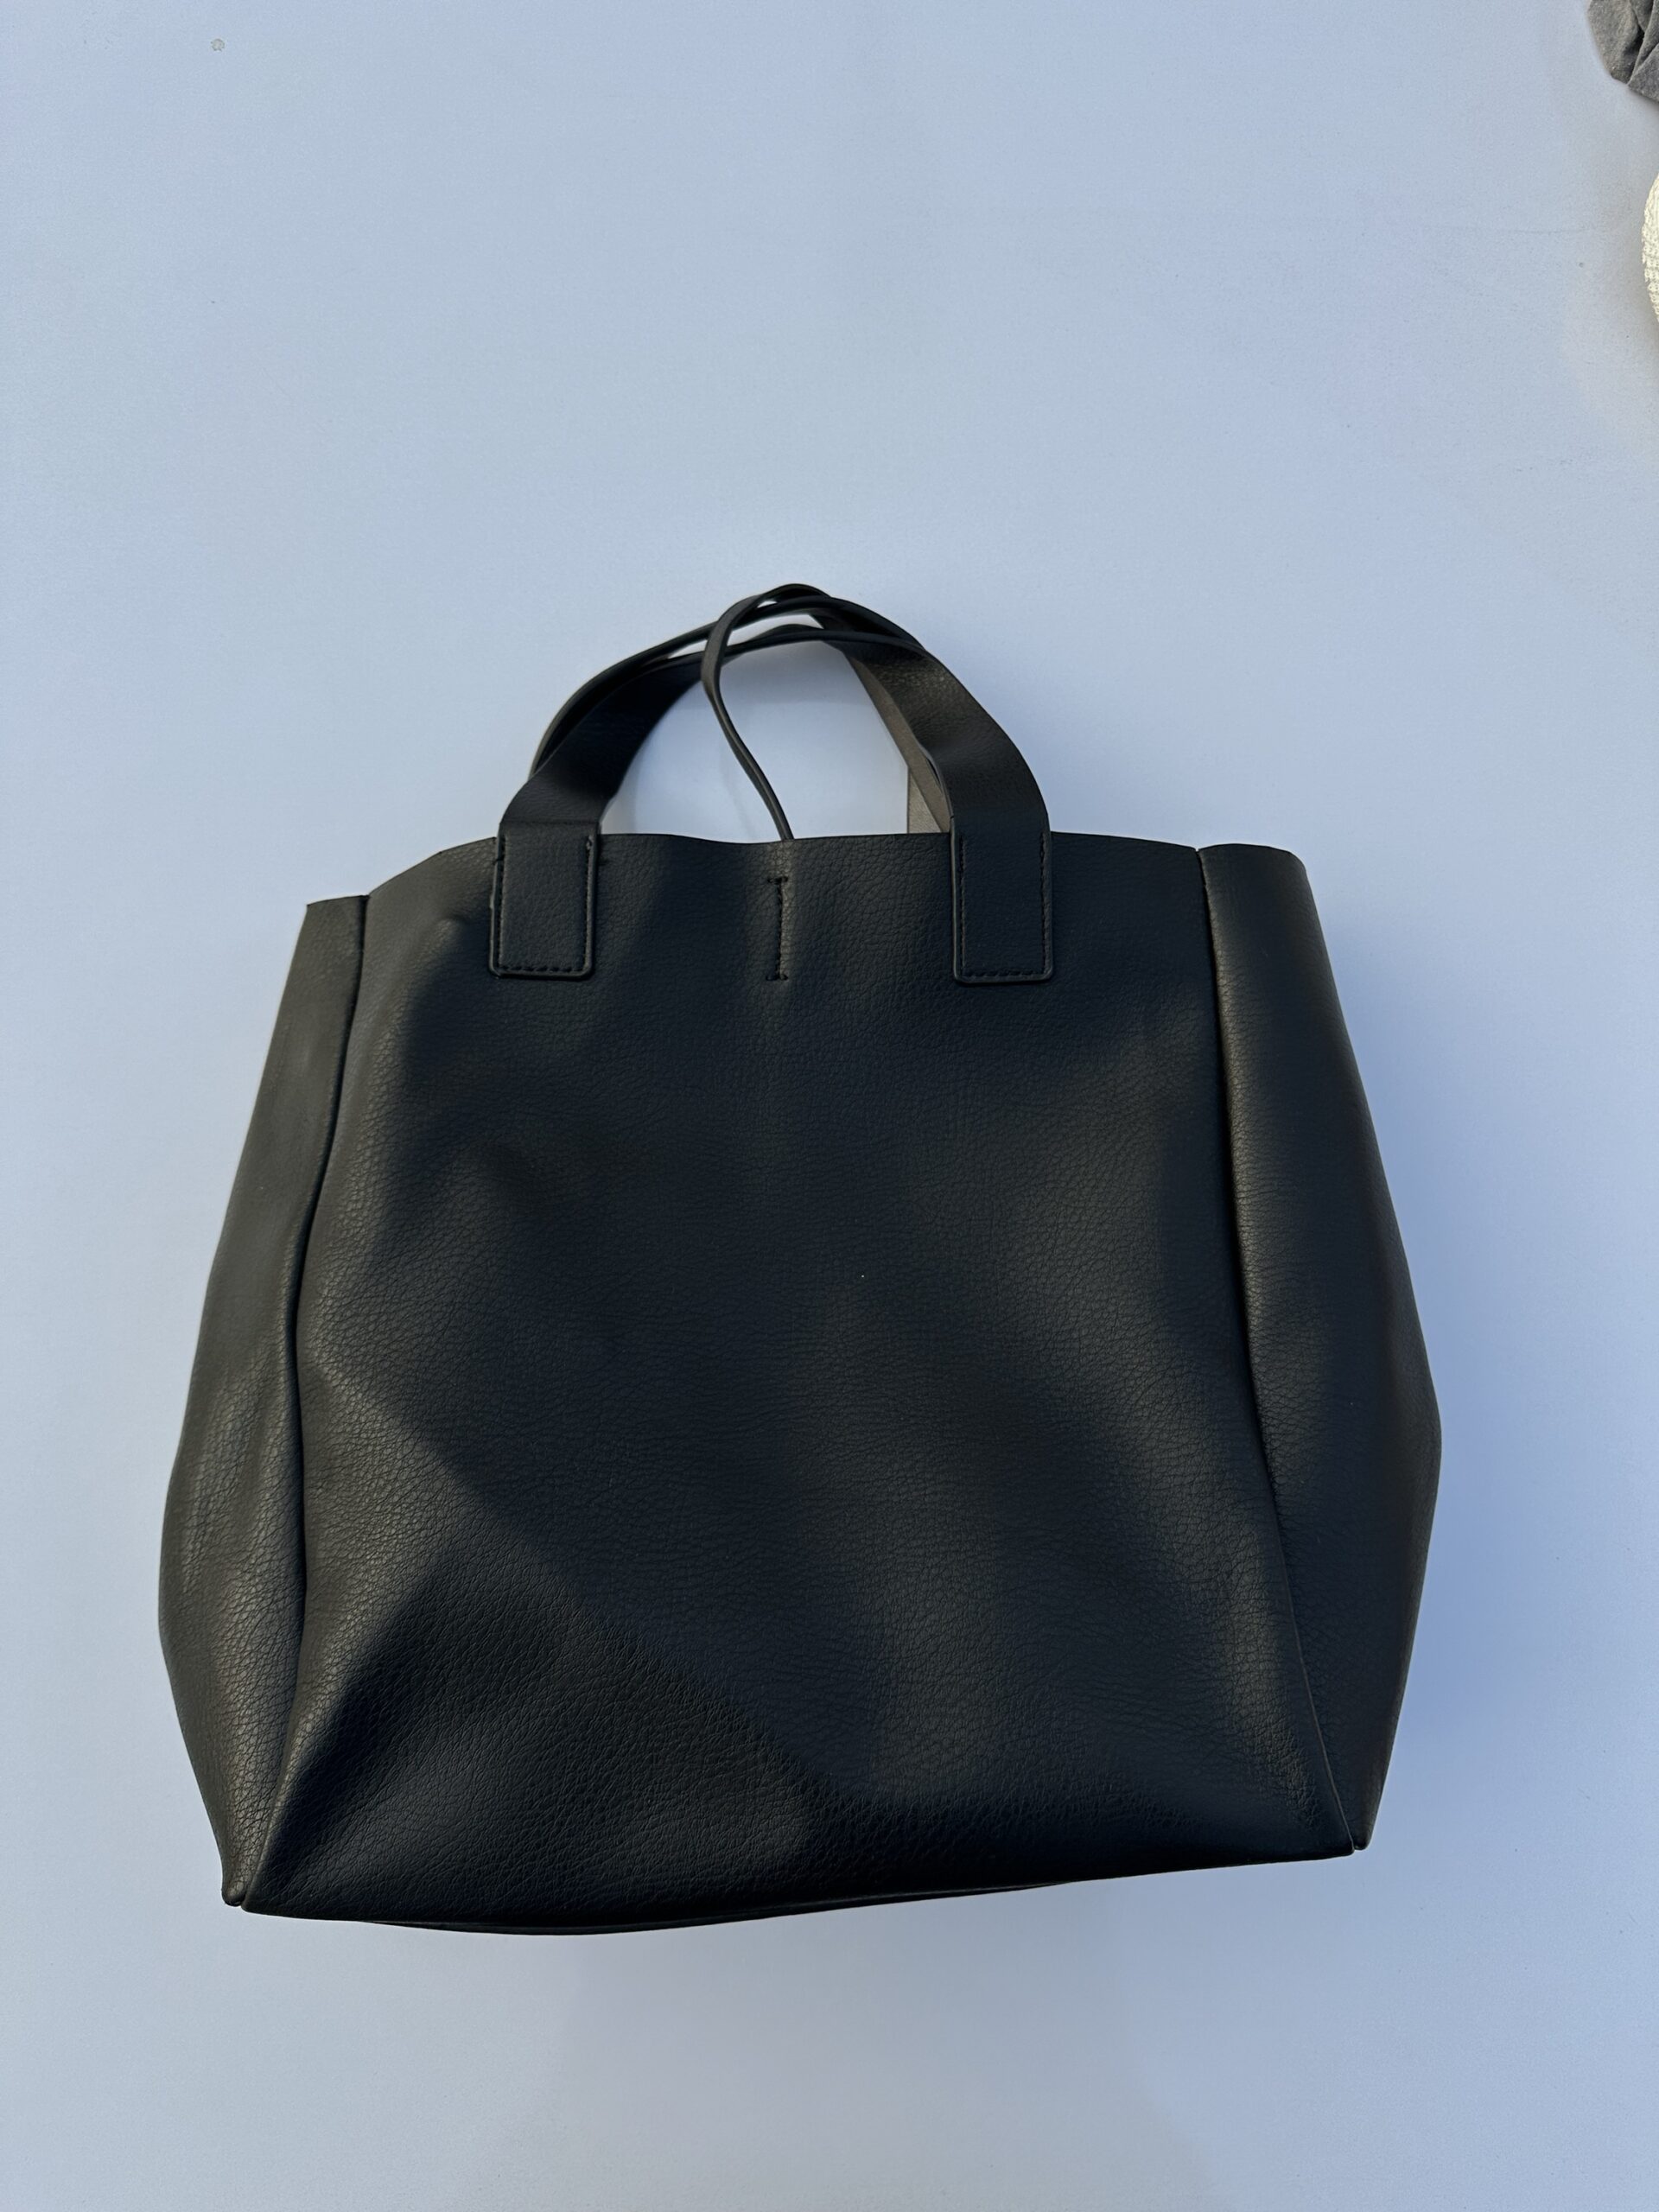 Zara black tote bag - BRANDSLOU